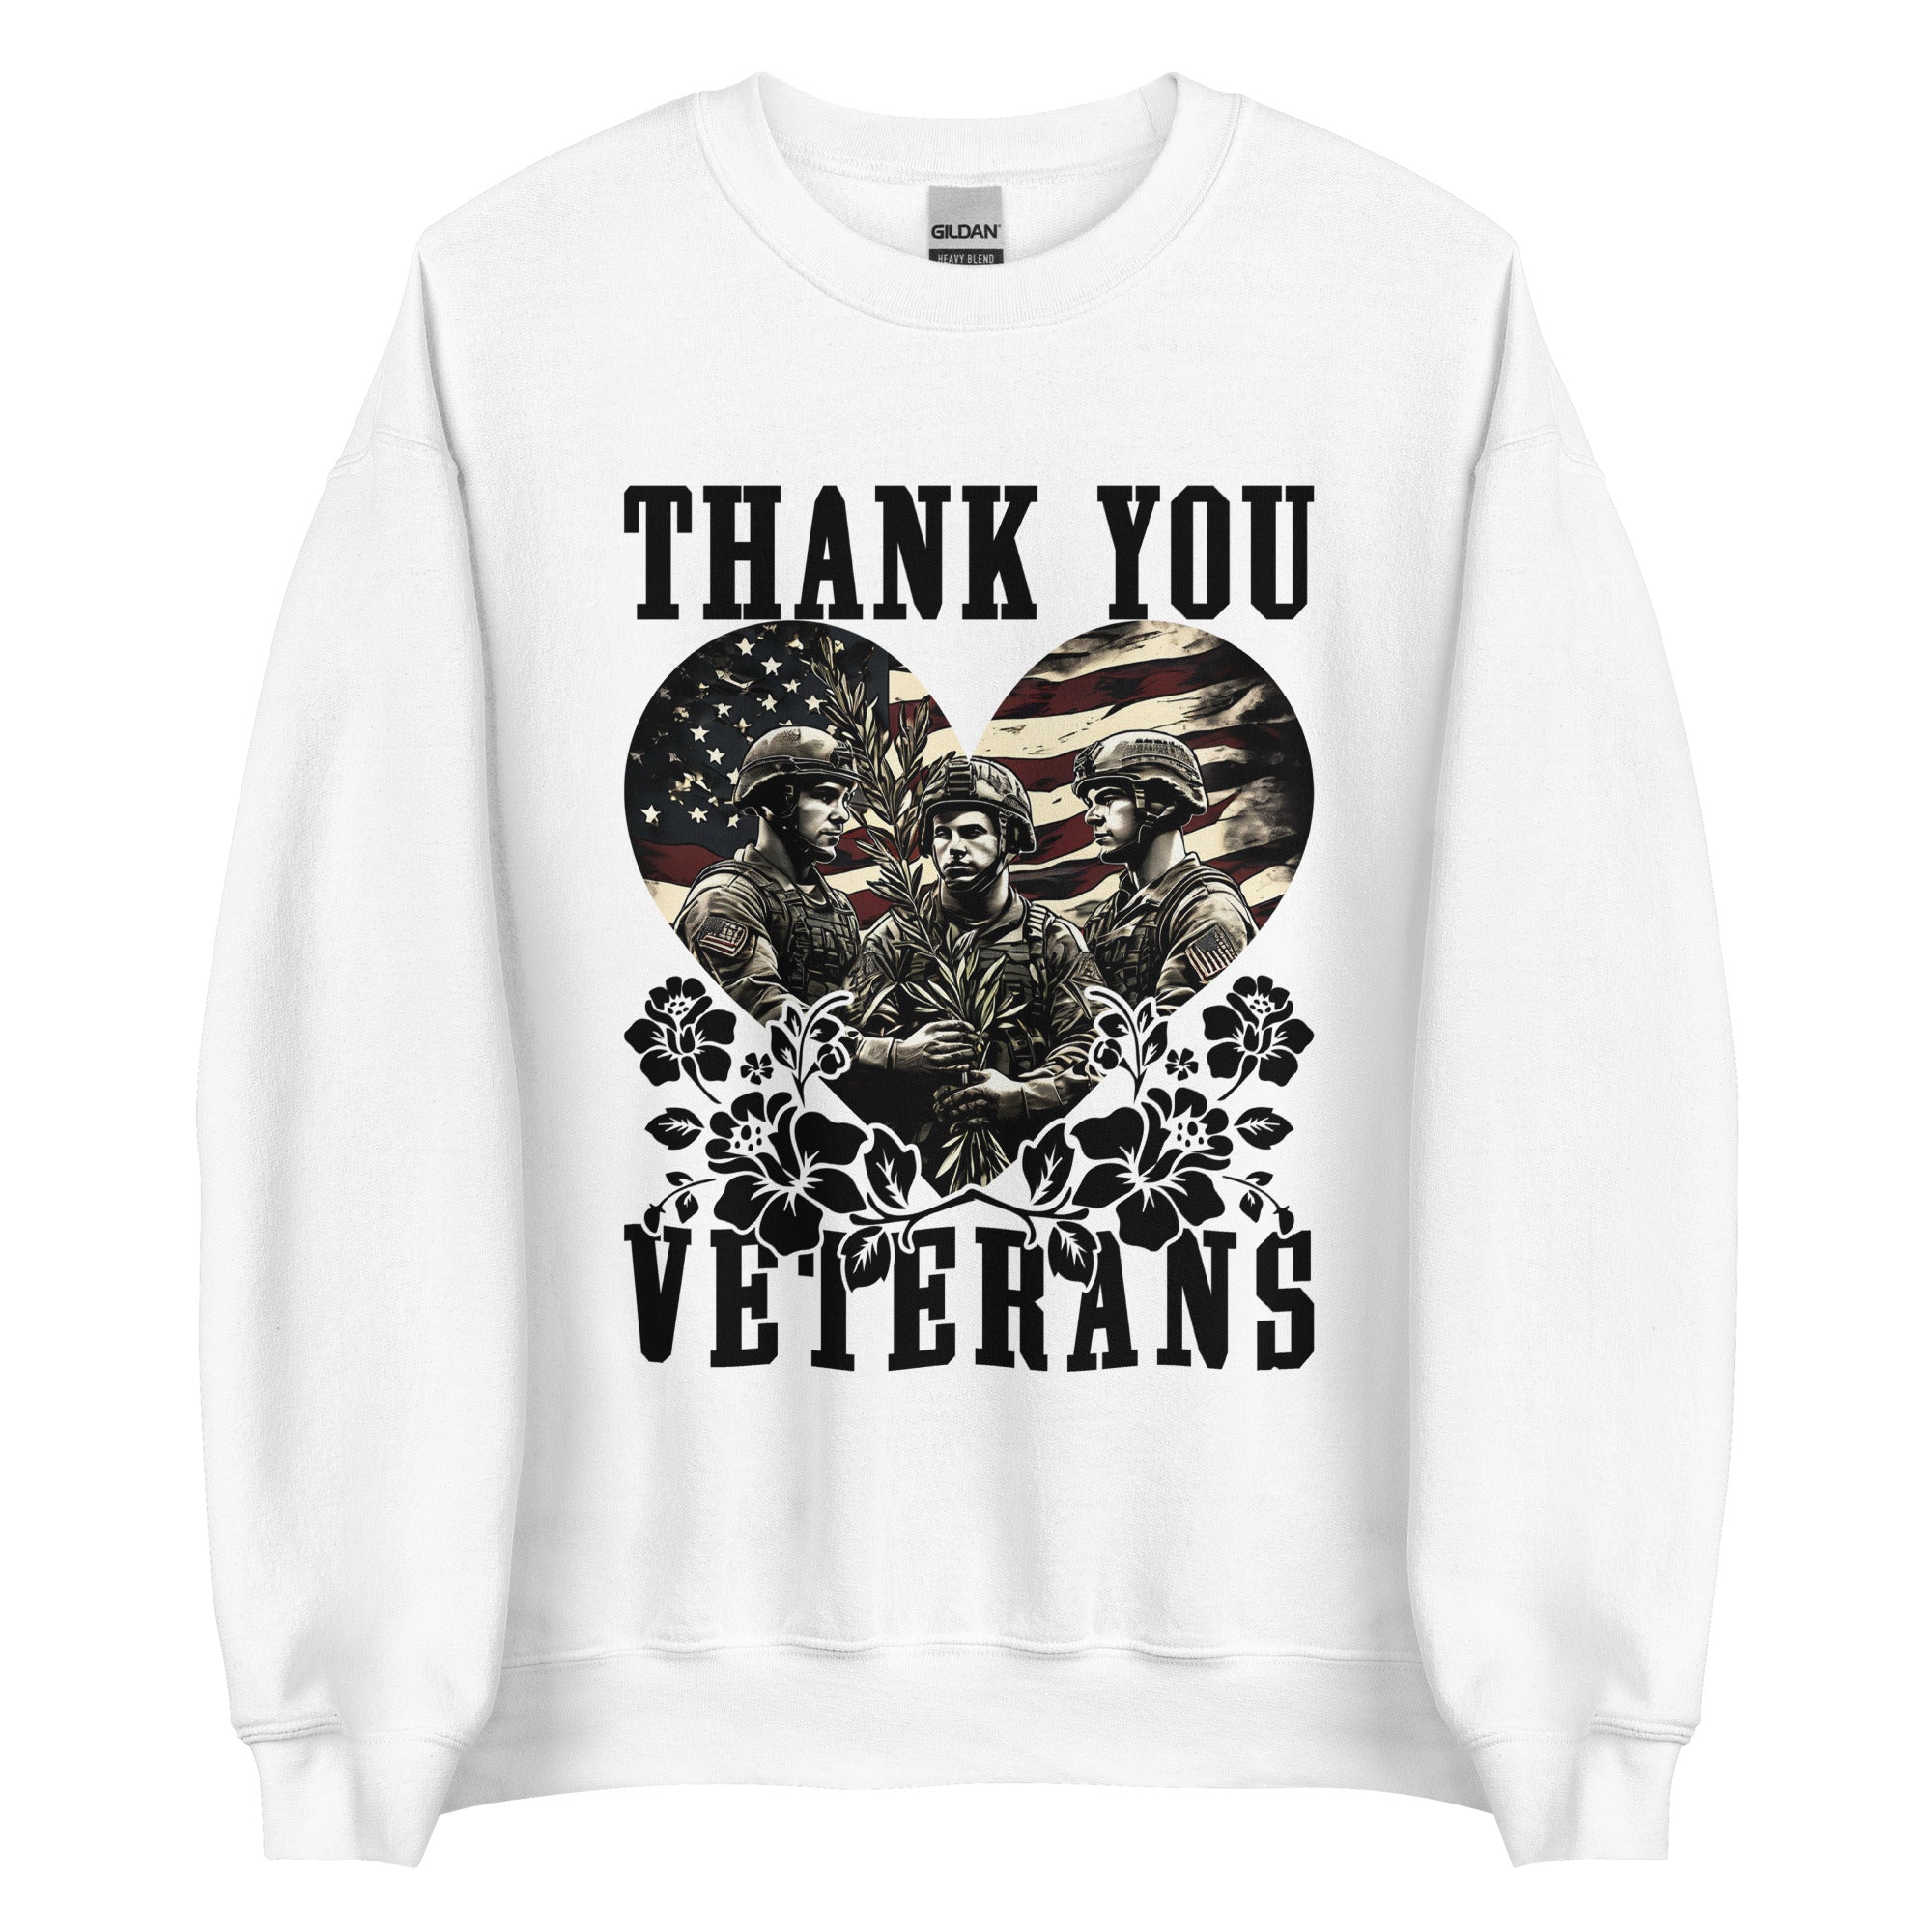 Thank You Veterans Men's Sweatshirt